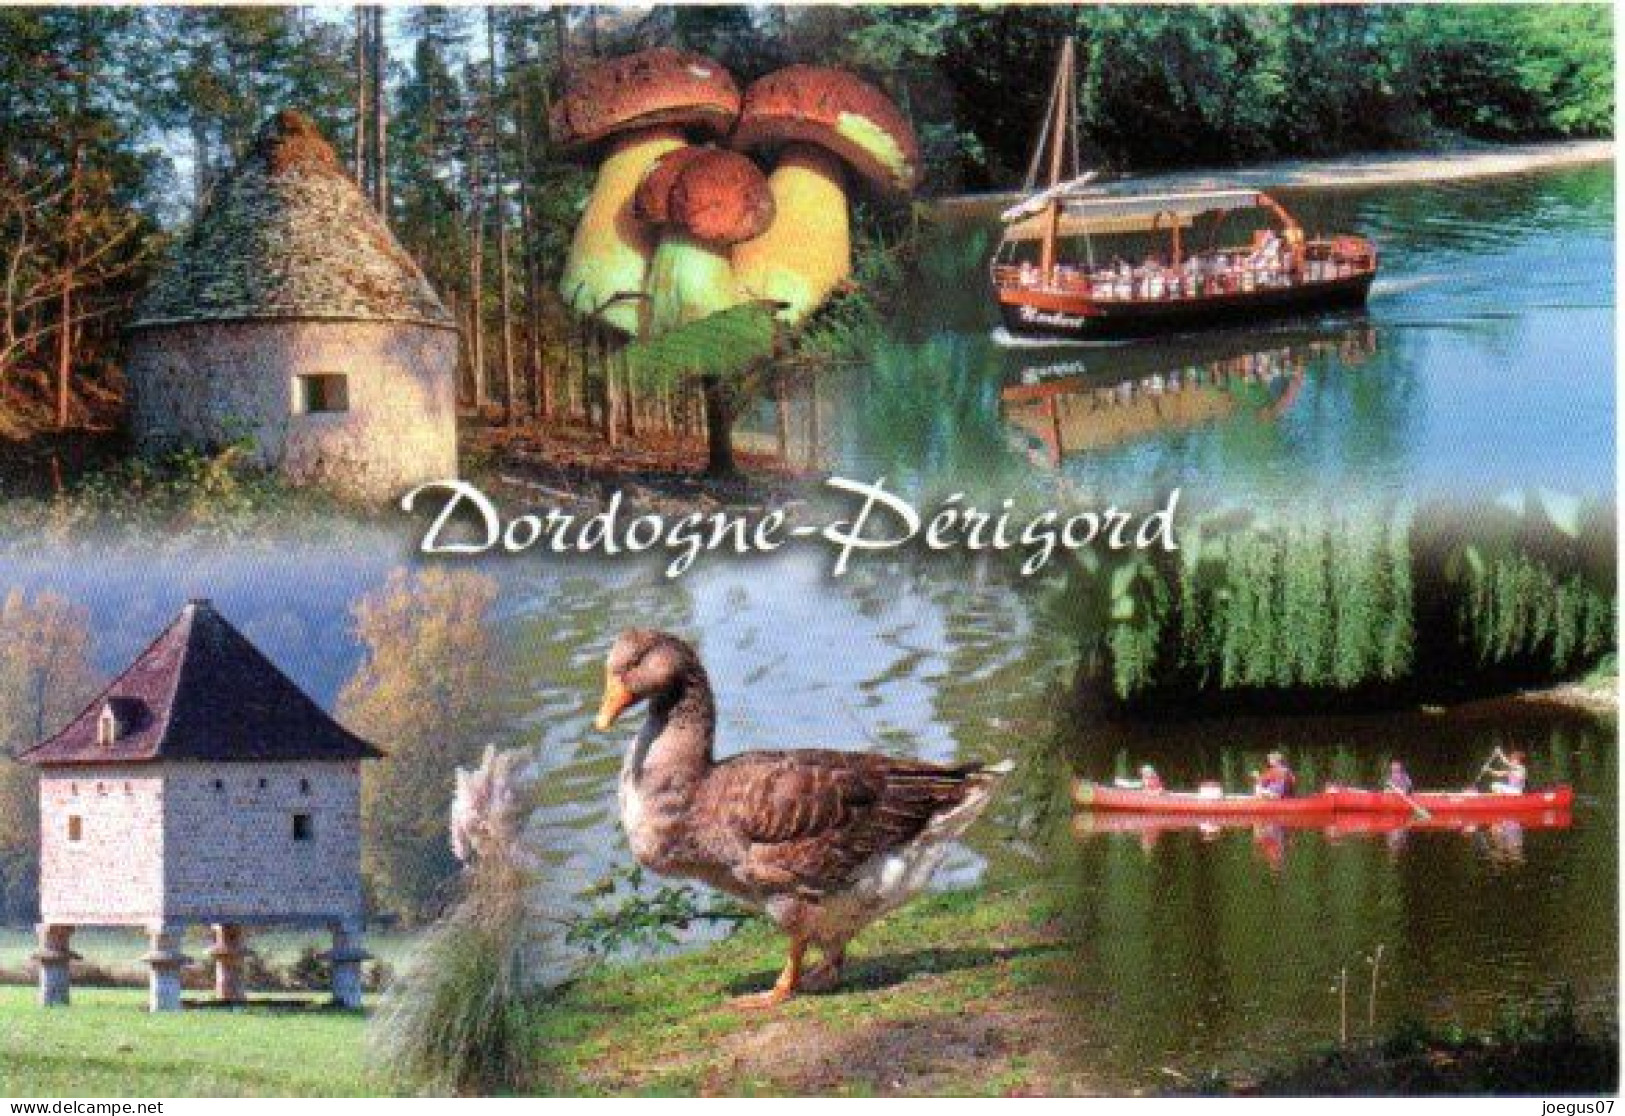 Dordogne-Périgord - Champignon, Cèpes. Borie. Pigeonnier. Gabarre Et Canoë Kayak. Oie - Editions MARCOU N° 24996 - Paddestoelen